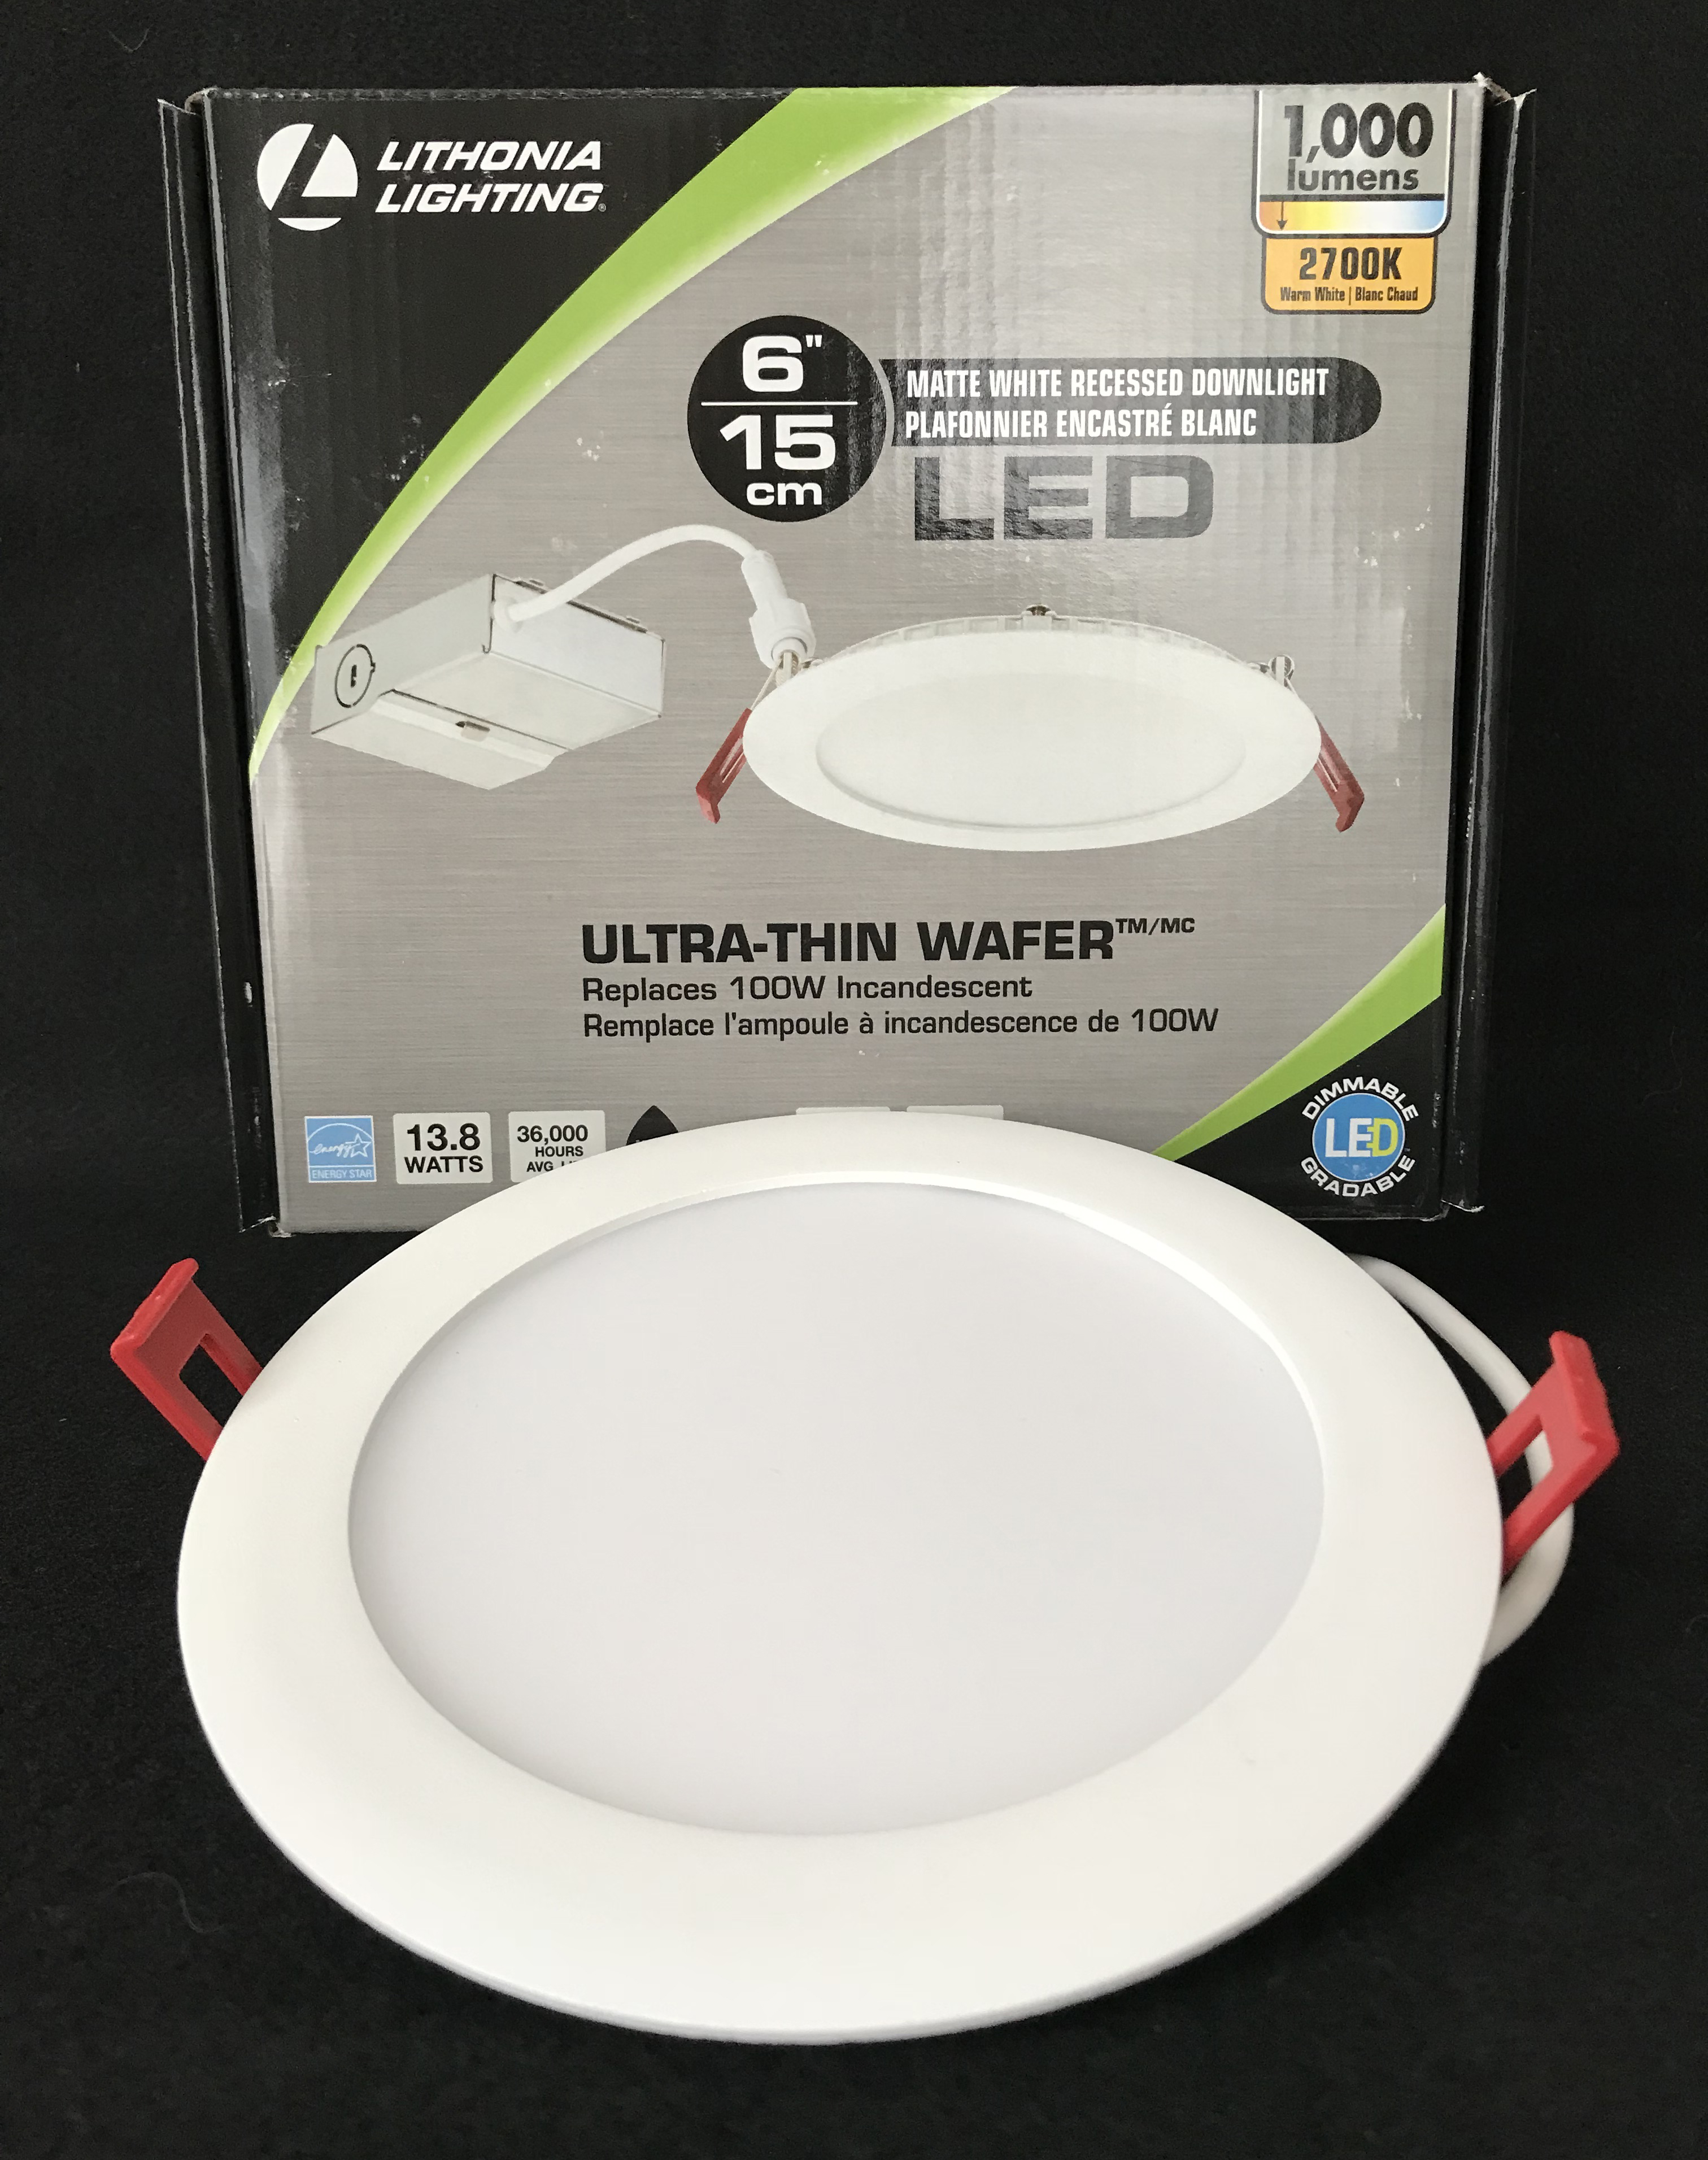 Lithonia 6" LED Wafer Thin